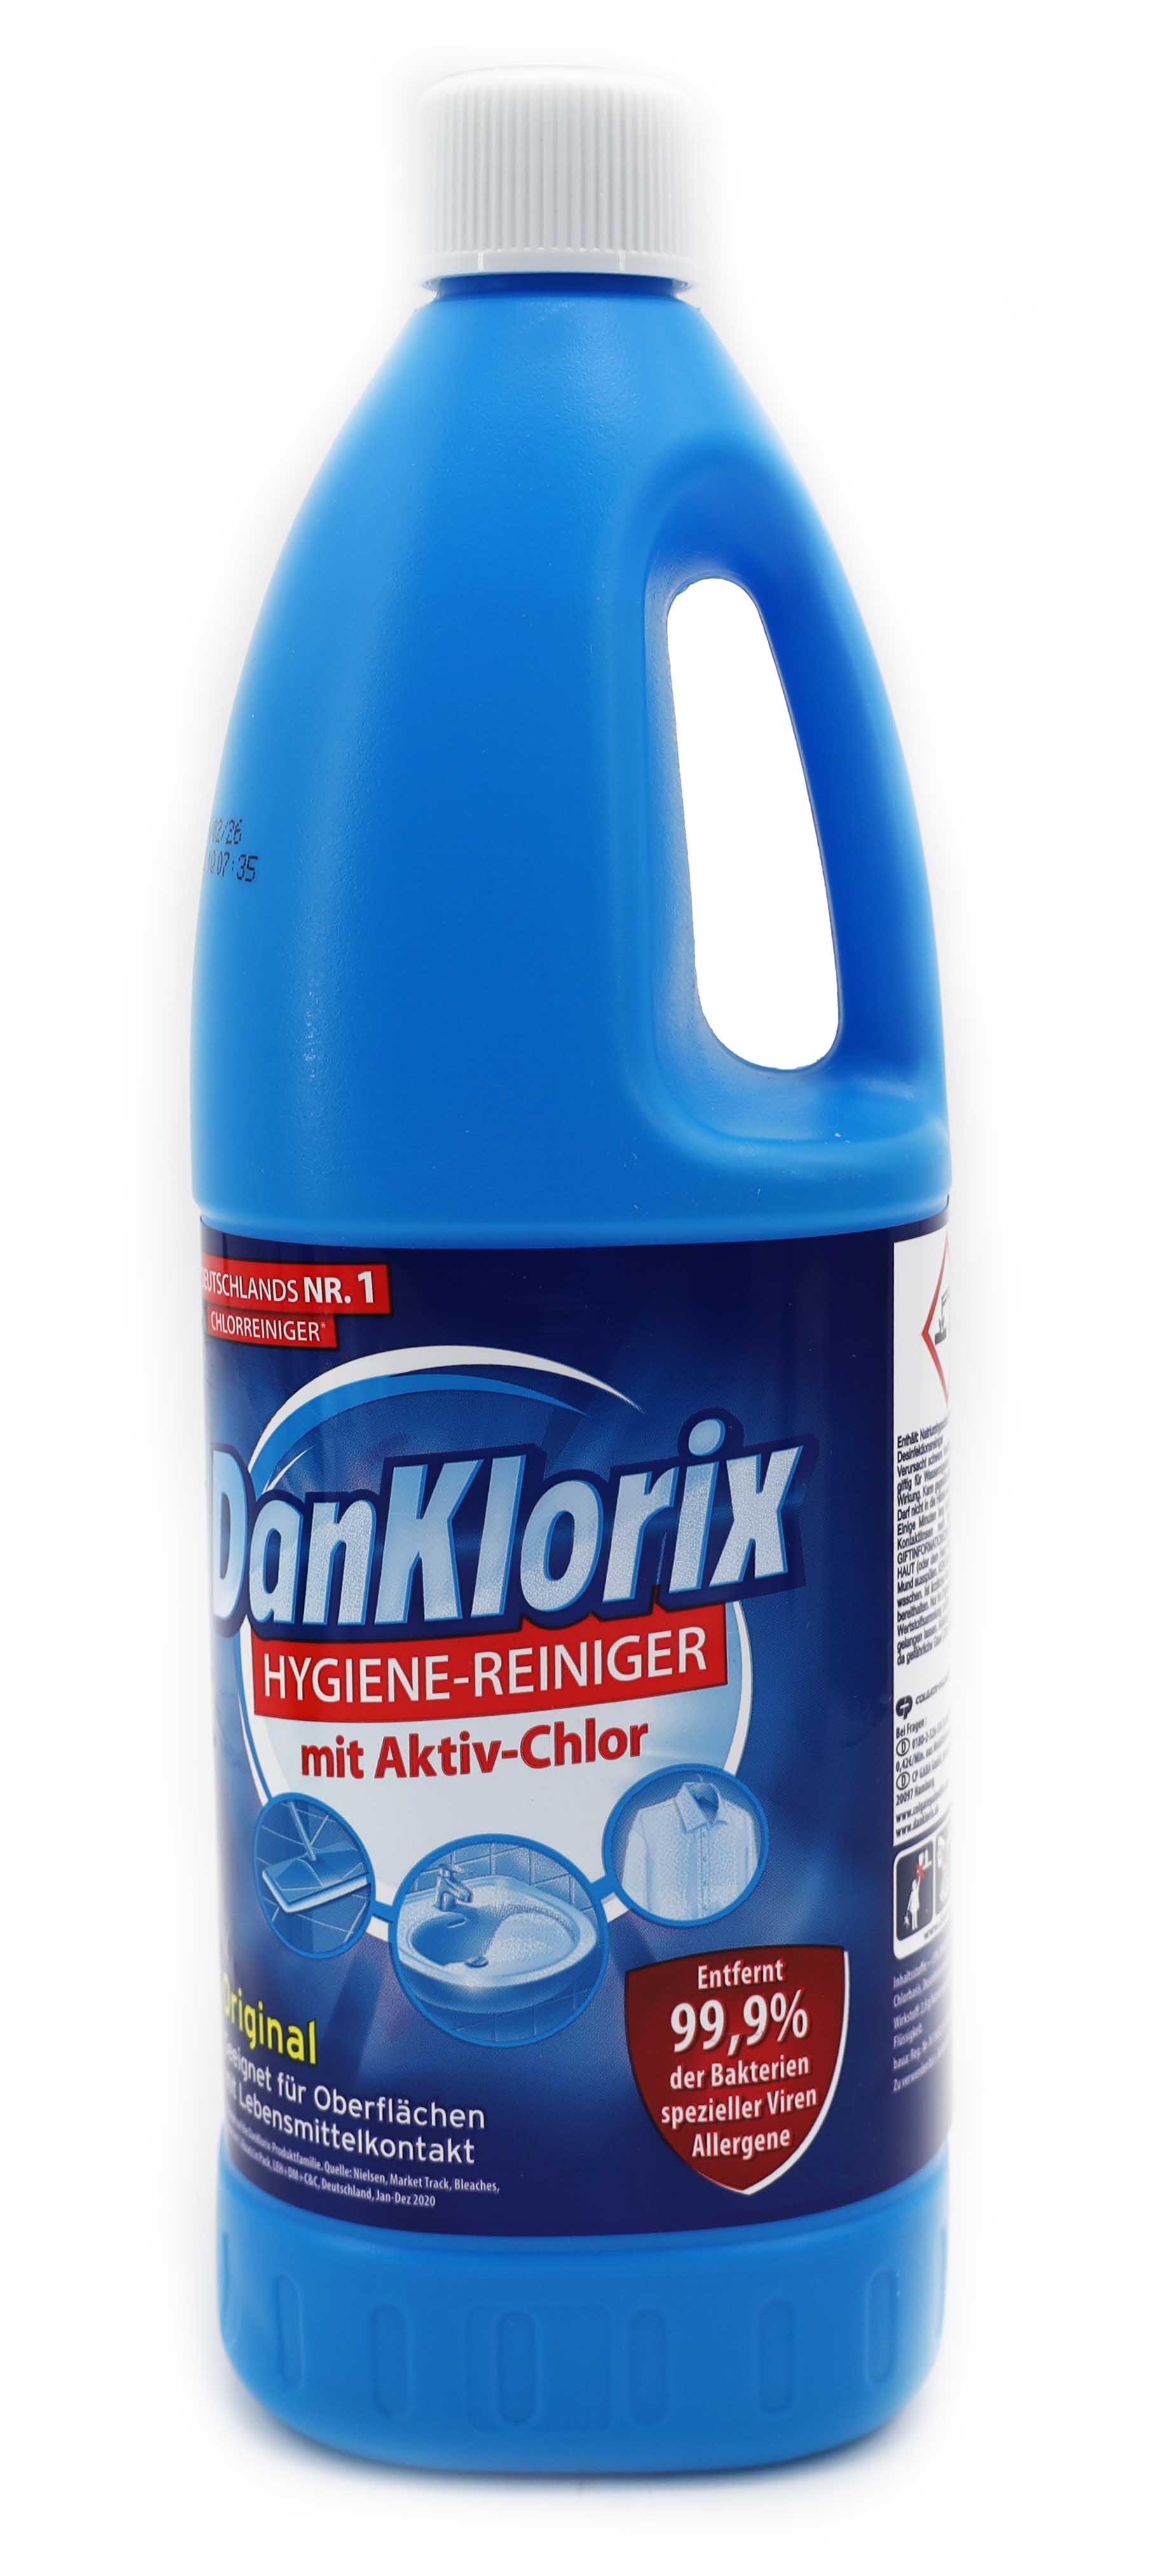 DanKlorix Hygiene-Reiniger Original 1,5 Liter